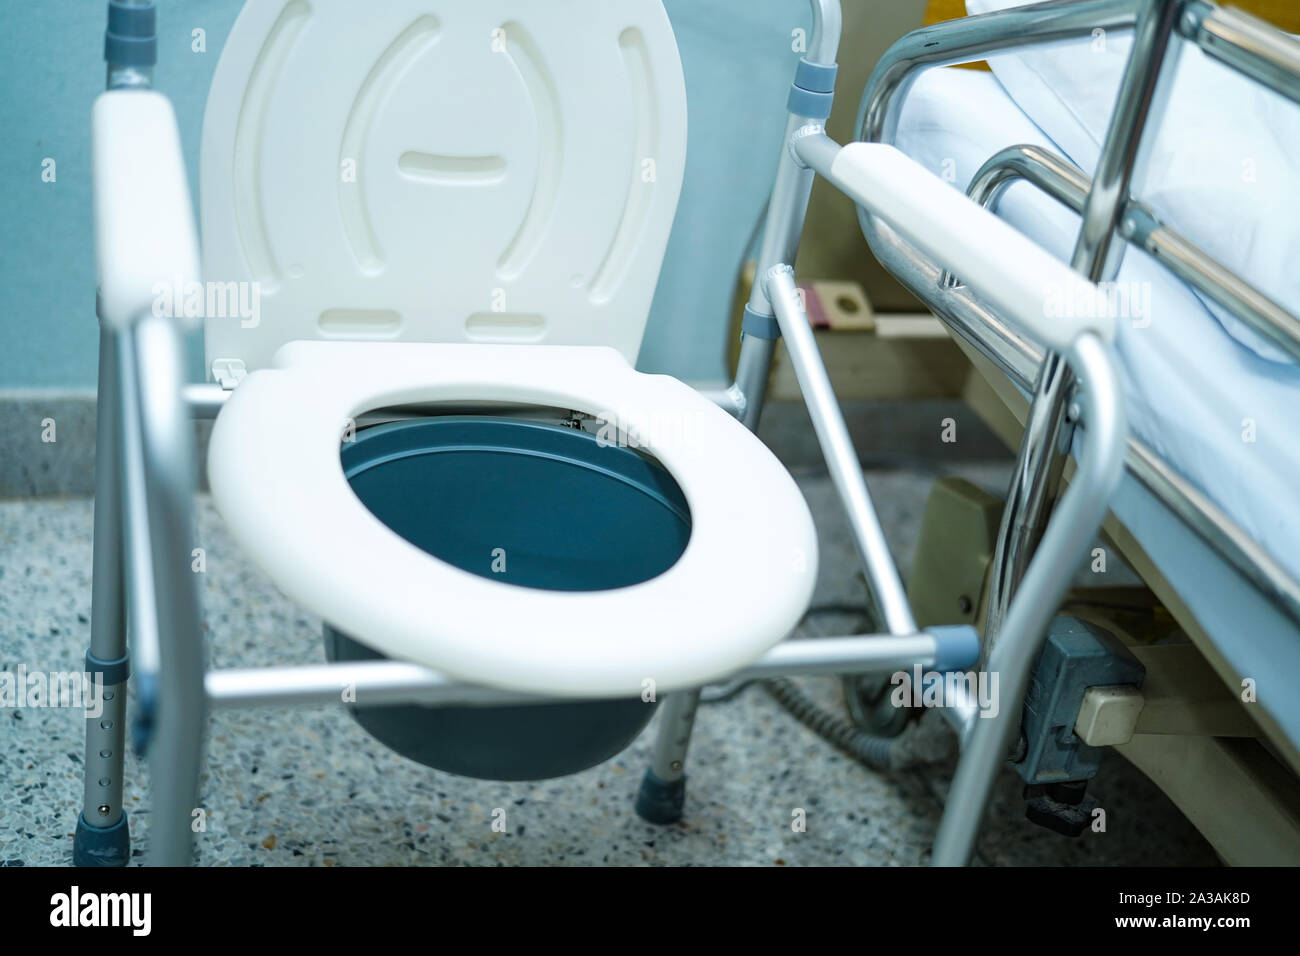 Kommode Stuhl oder mobile Toilette können Sie im Schlafzimmer oder überall  für ältere Alte behinderte Menschen oder Patienten: Gesunde starke  medizinisches Konzept Stockfotografie - Alamy